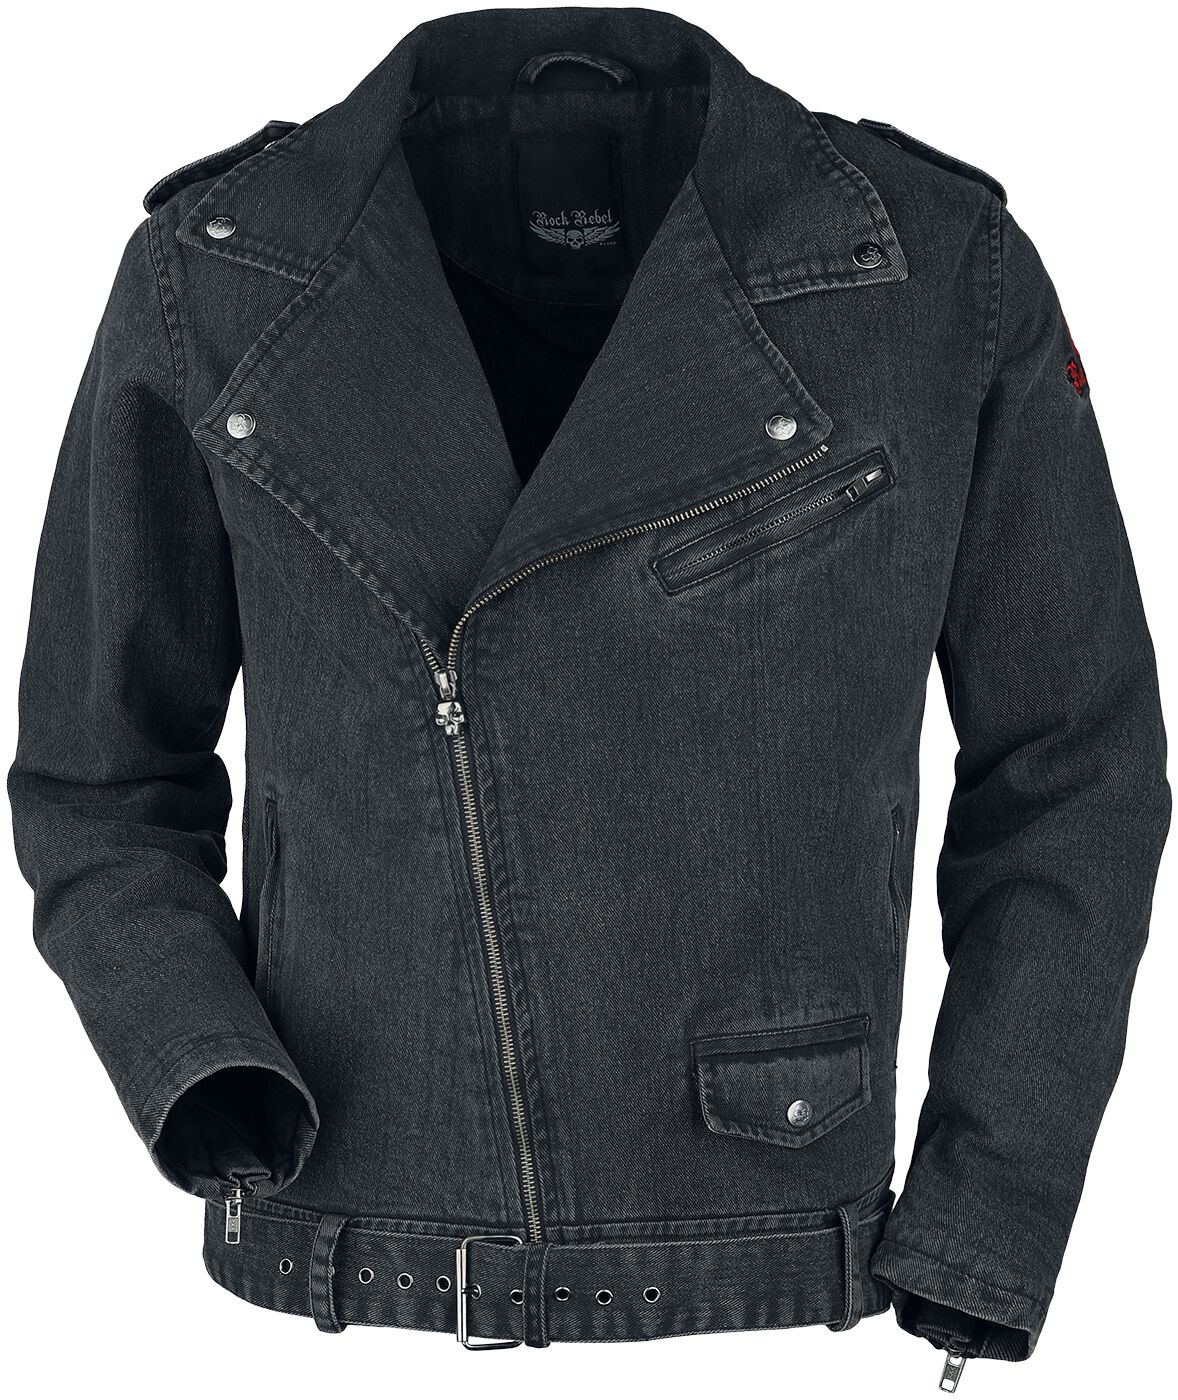 Rock Rebel by EMP - Rock Jeansjacke - Biker Style Jeans Jacket - S bis XXL - für Männer - Größe XL - grau